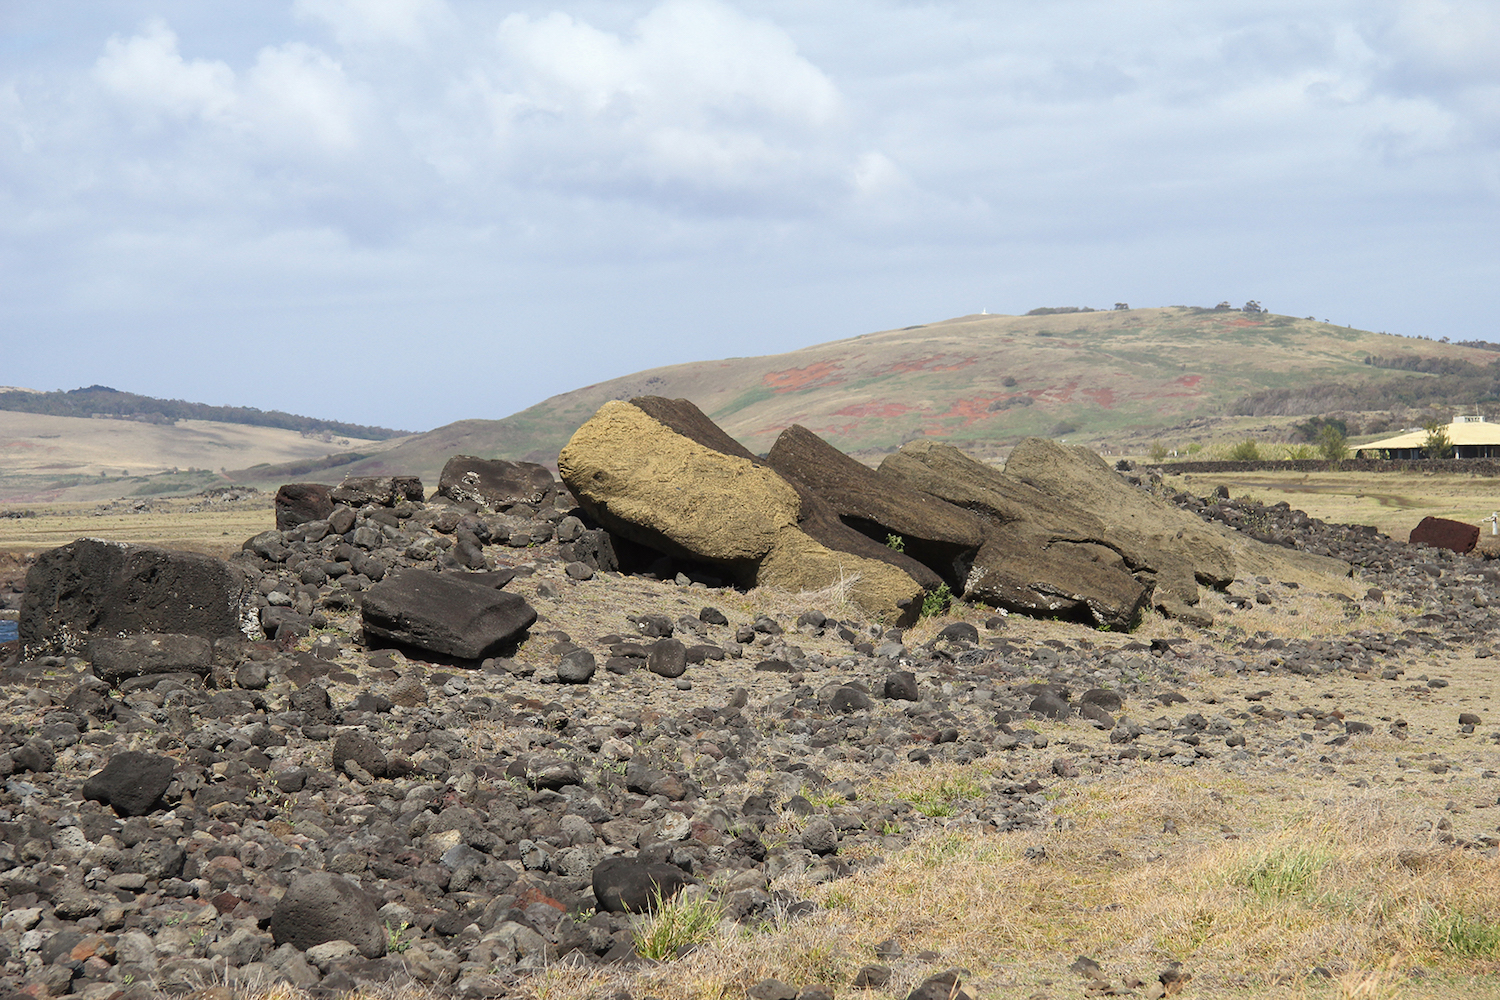 Ahu Hanga Te’e (côte méridionale) : ce monument, un des plus grands de l’île, semble aujourd’hui en ruine. Les huit moai, désormais couchés face contre terre, montrent une belle ordonnance, sans dégât aucun, si ce n’est quelques fissurations. © Nicolas Cauwe.